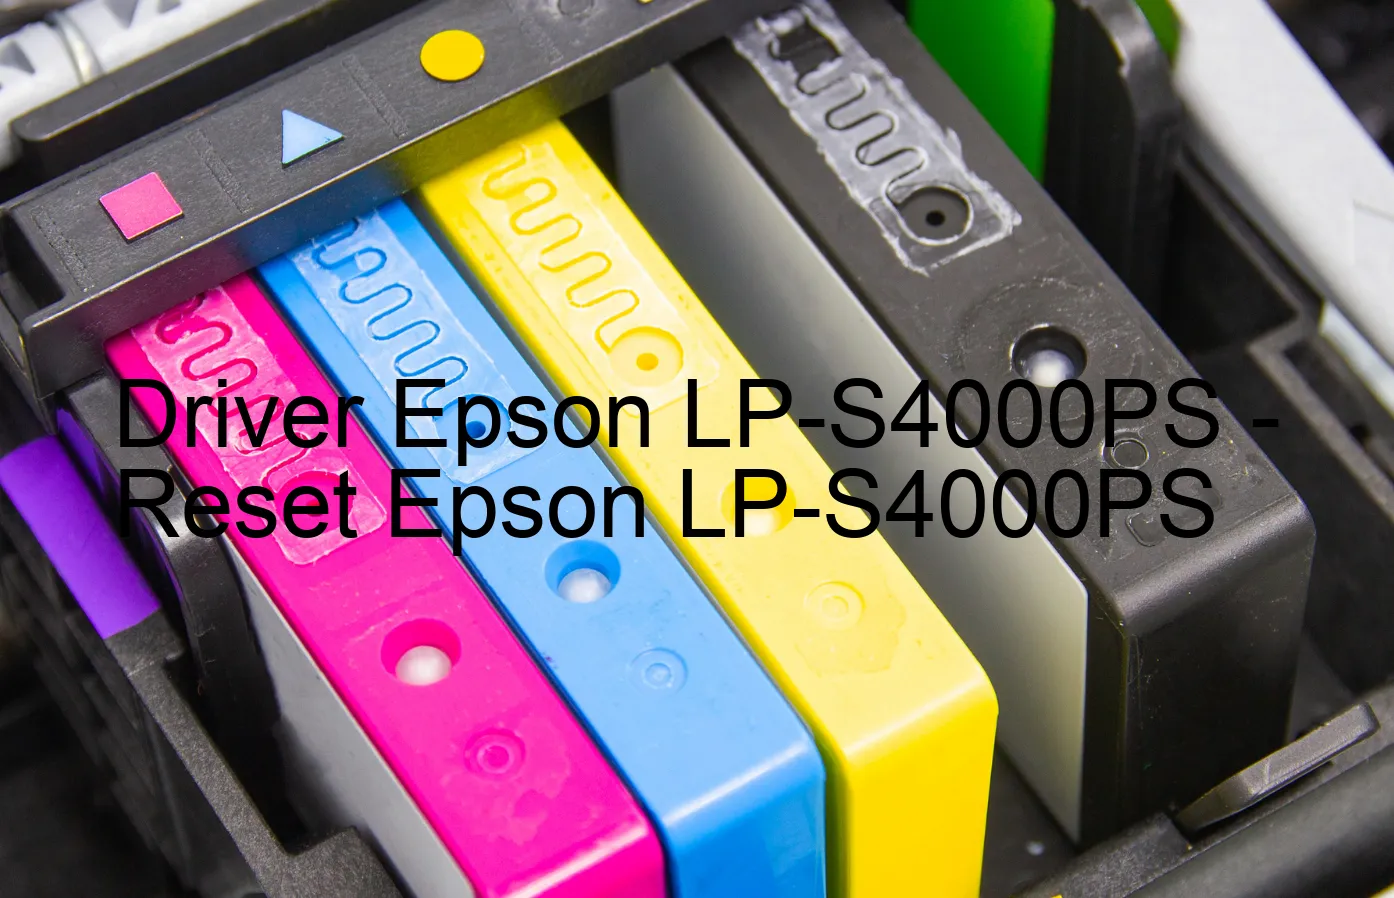 Epson LP-S4000PSのドライバー、Epson LP-S4000PSのリセットソフトウェア